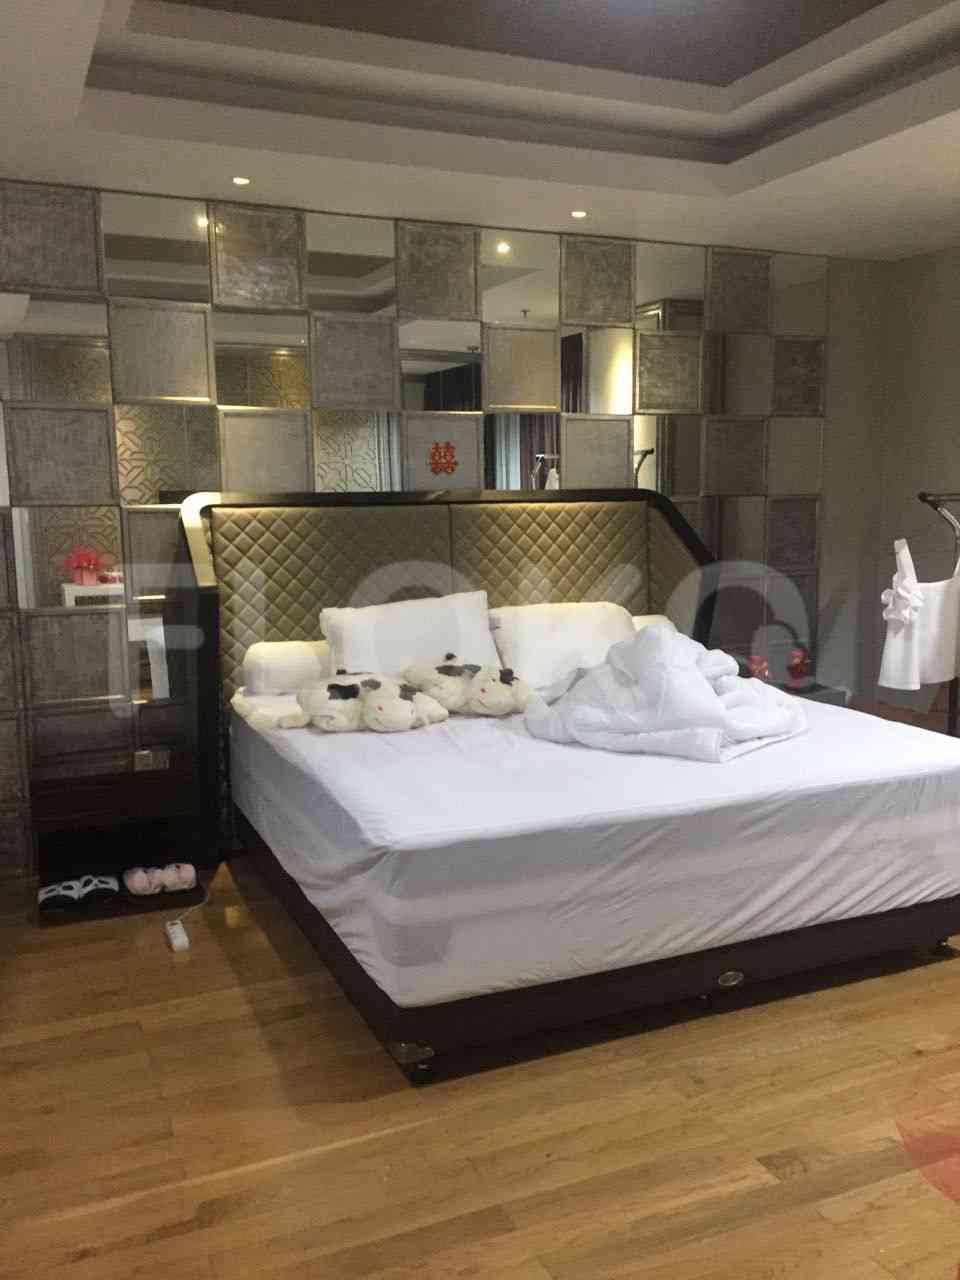 3 Bedroom on 19th Floor for Rent in Regatta - fpl88c 1